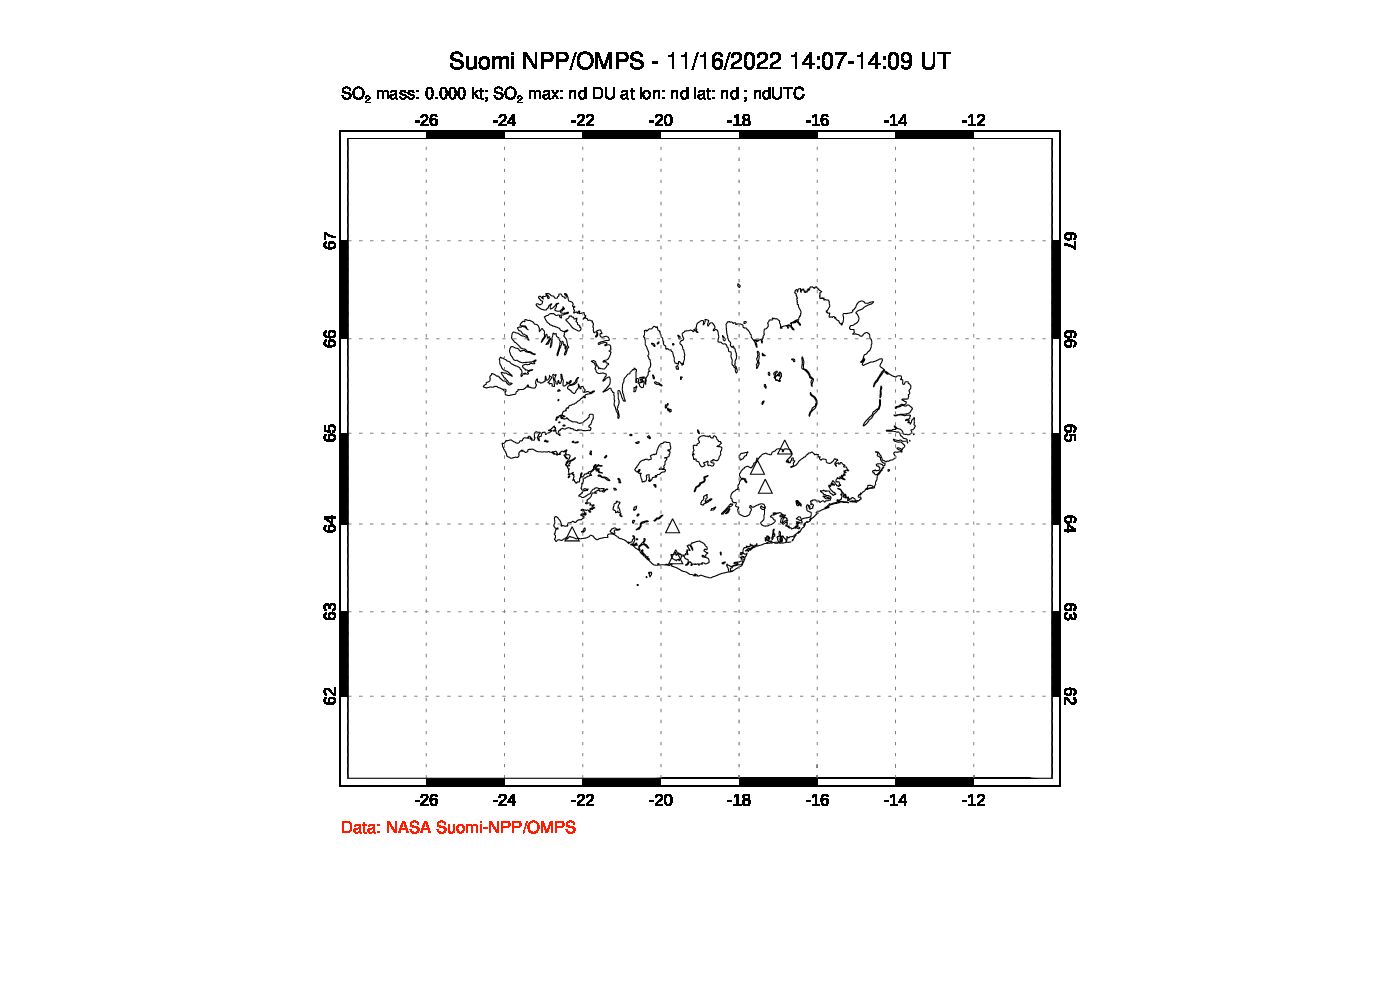 A sulfur dioxide image over Iceland on Nov 16, 2022.